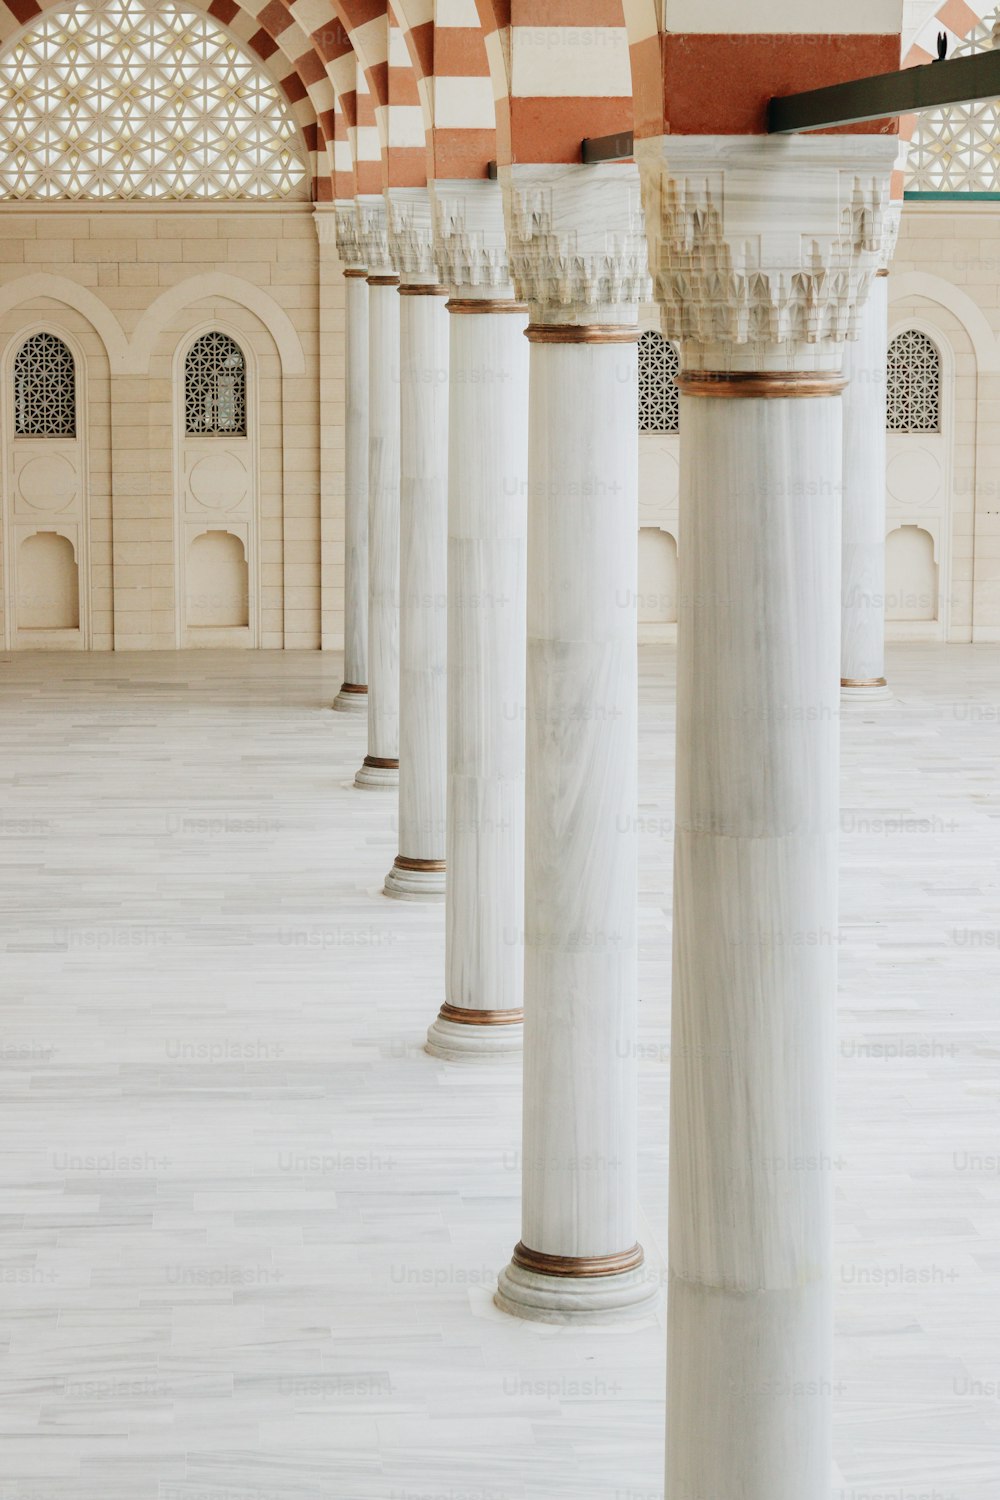 Una fila di pilastri di marmo bianco in un edificio